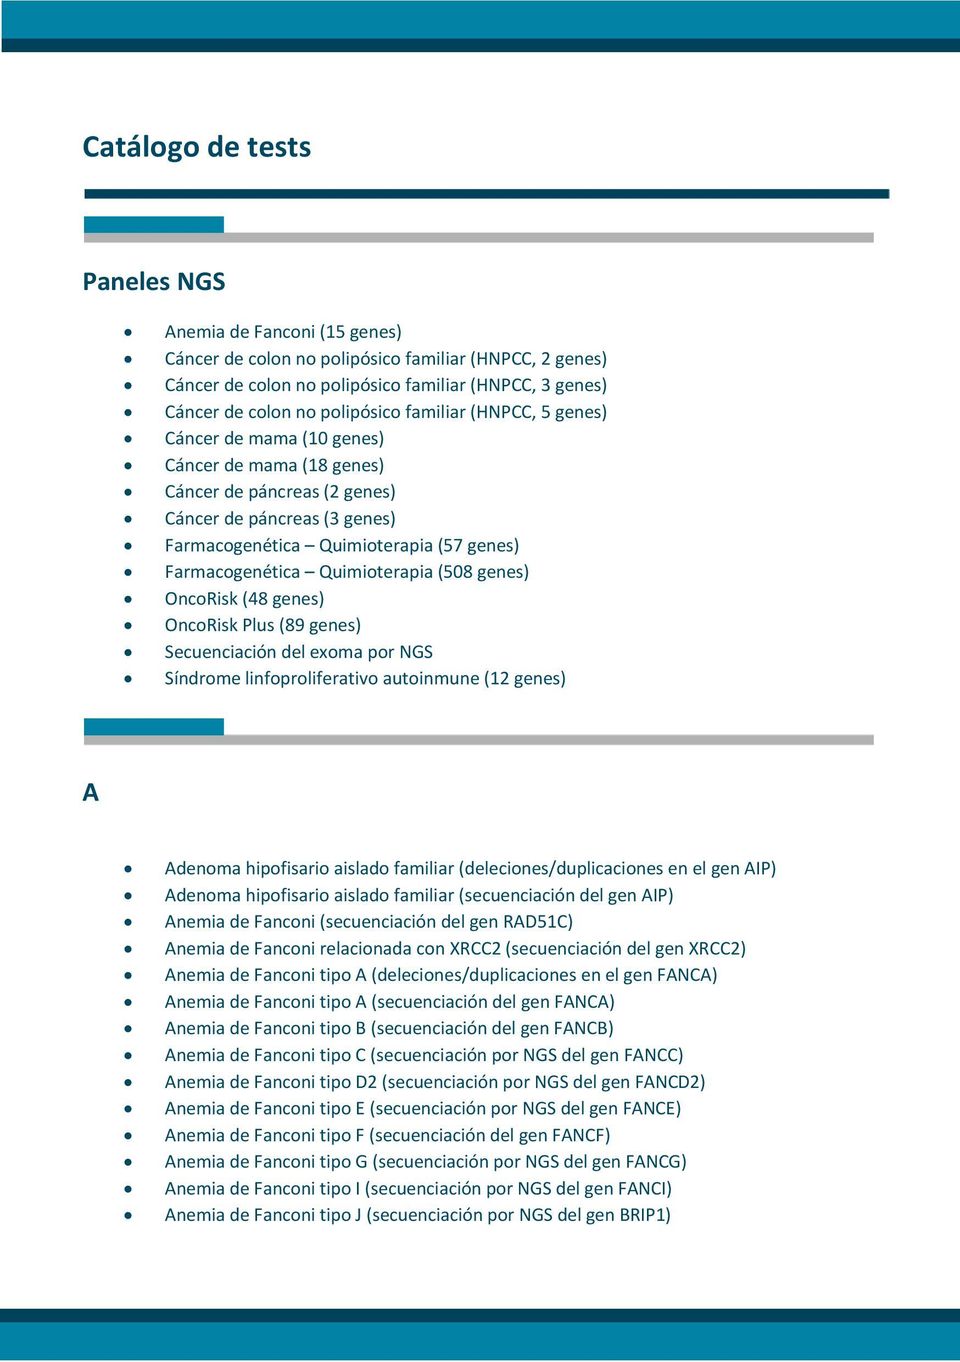 Farmacogenética Quimioterapia (508 genes) OncoRisk (48 genes) OncoRisk Plus (89 genes) Secuenciación del exoma por NGS Síndrome linfoproliferativo autoinmune (12 genes) A Adenoma hipofisario aislado